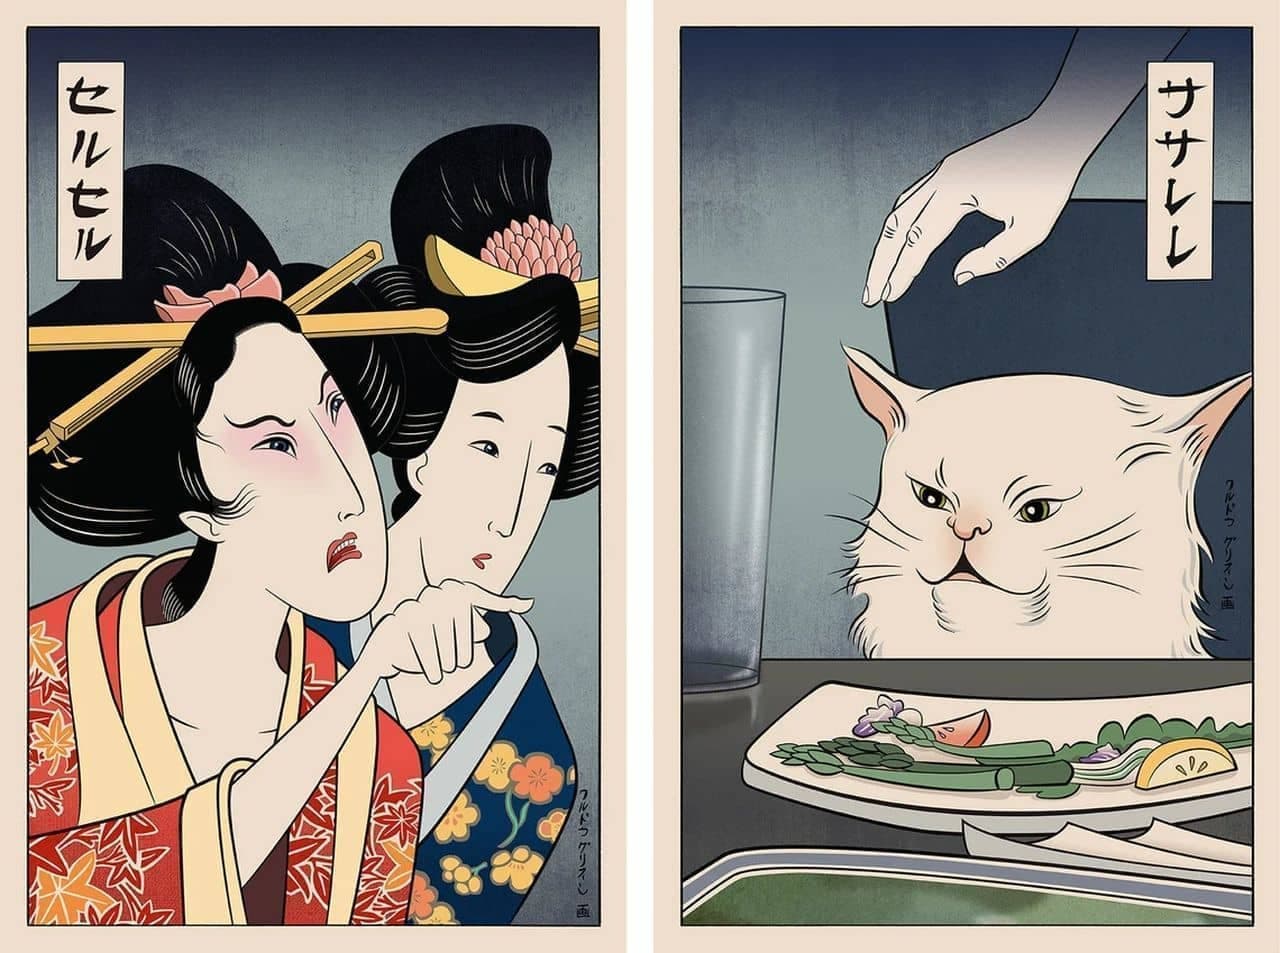 浮世絵ミーム！ ネコと女性が女性がネコをしかりつける浮世絵スタイルの絵画販売中 ちょっと変わった壁飾り絵が欲しい人に